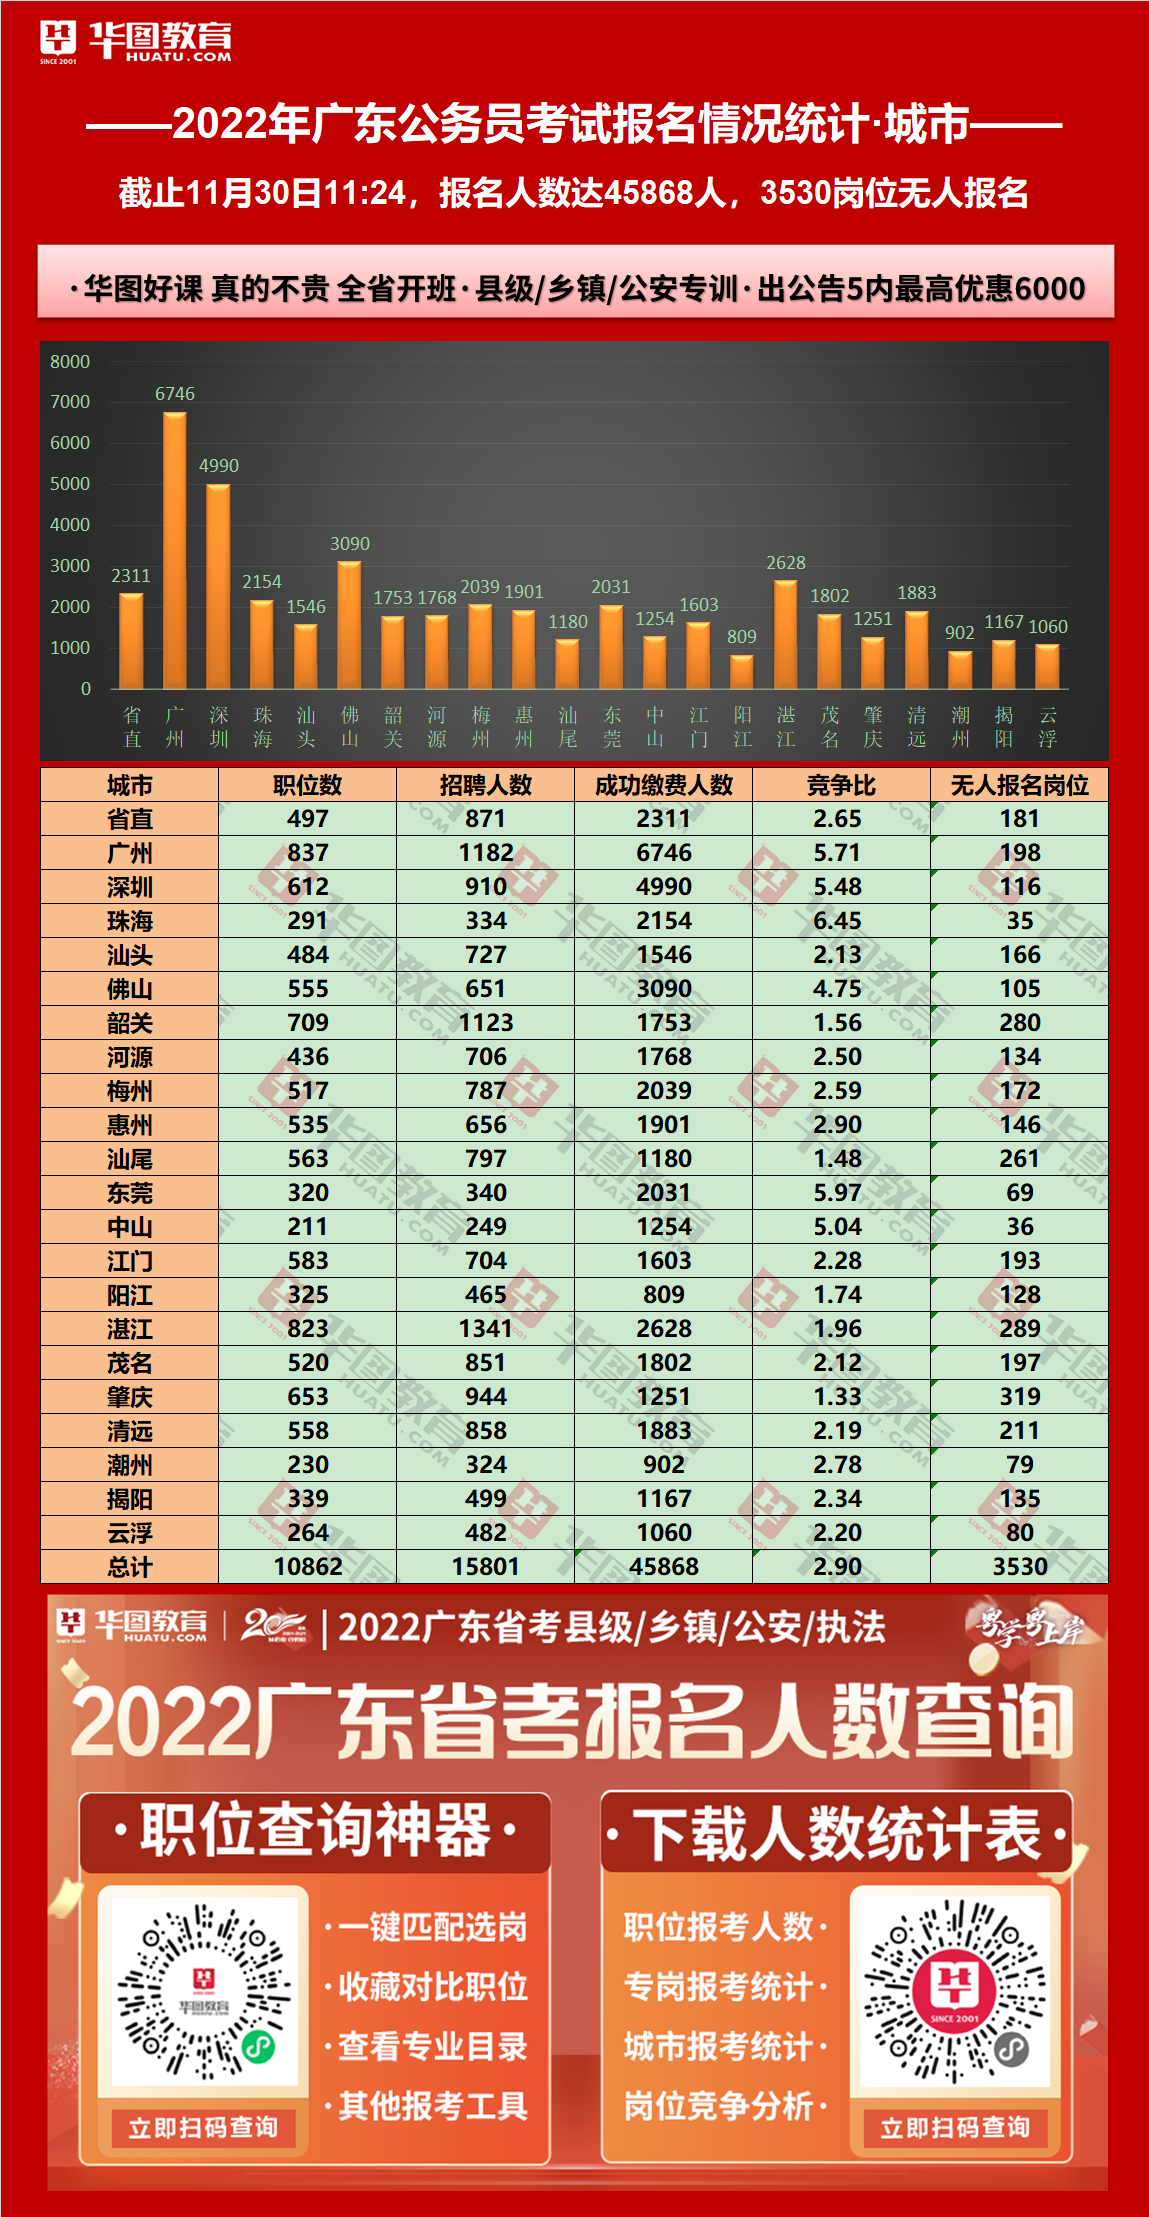 2022广东公务员考试报名人数统计：深圳考区4990报名，无人报名岗位116个（截至11月30日11时）